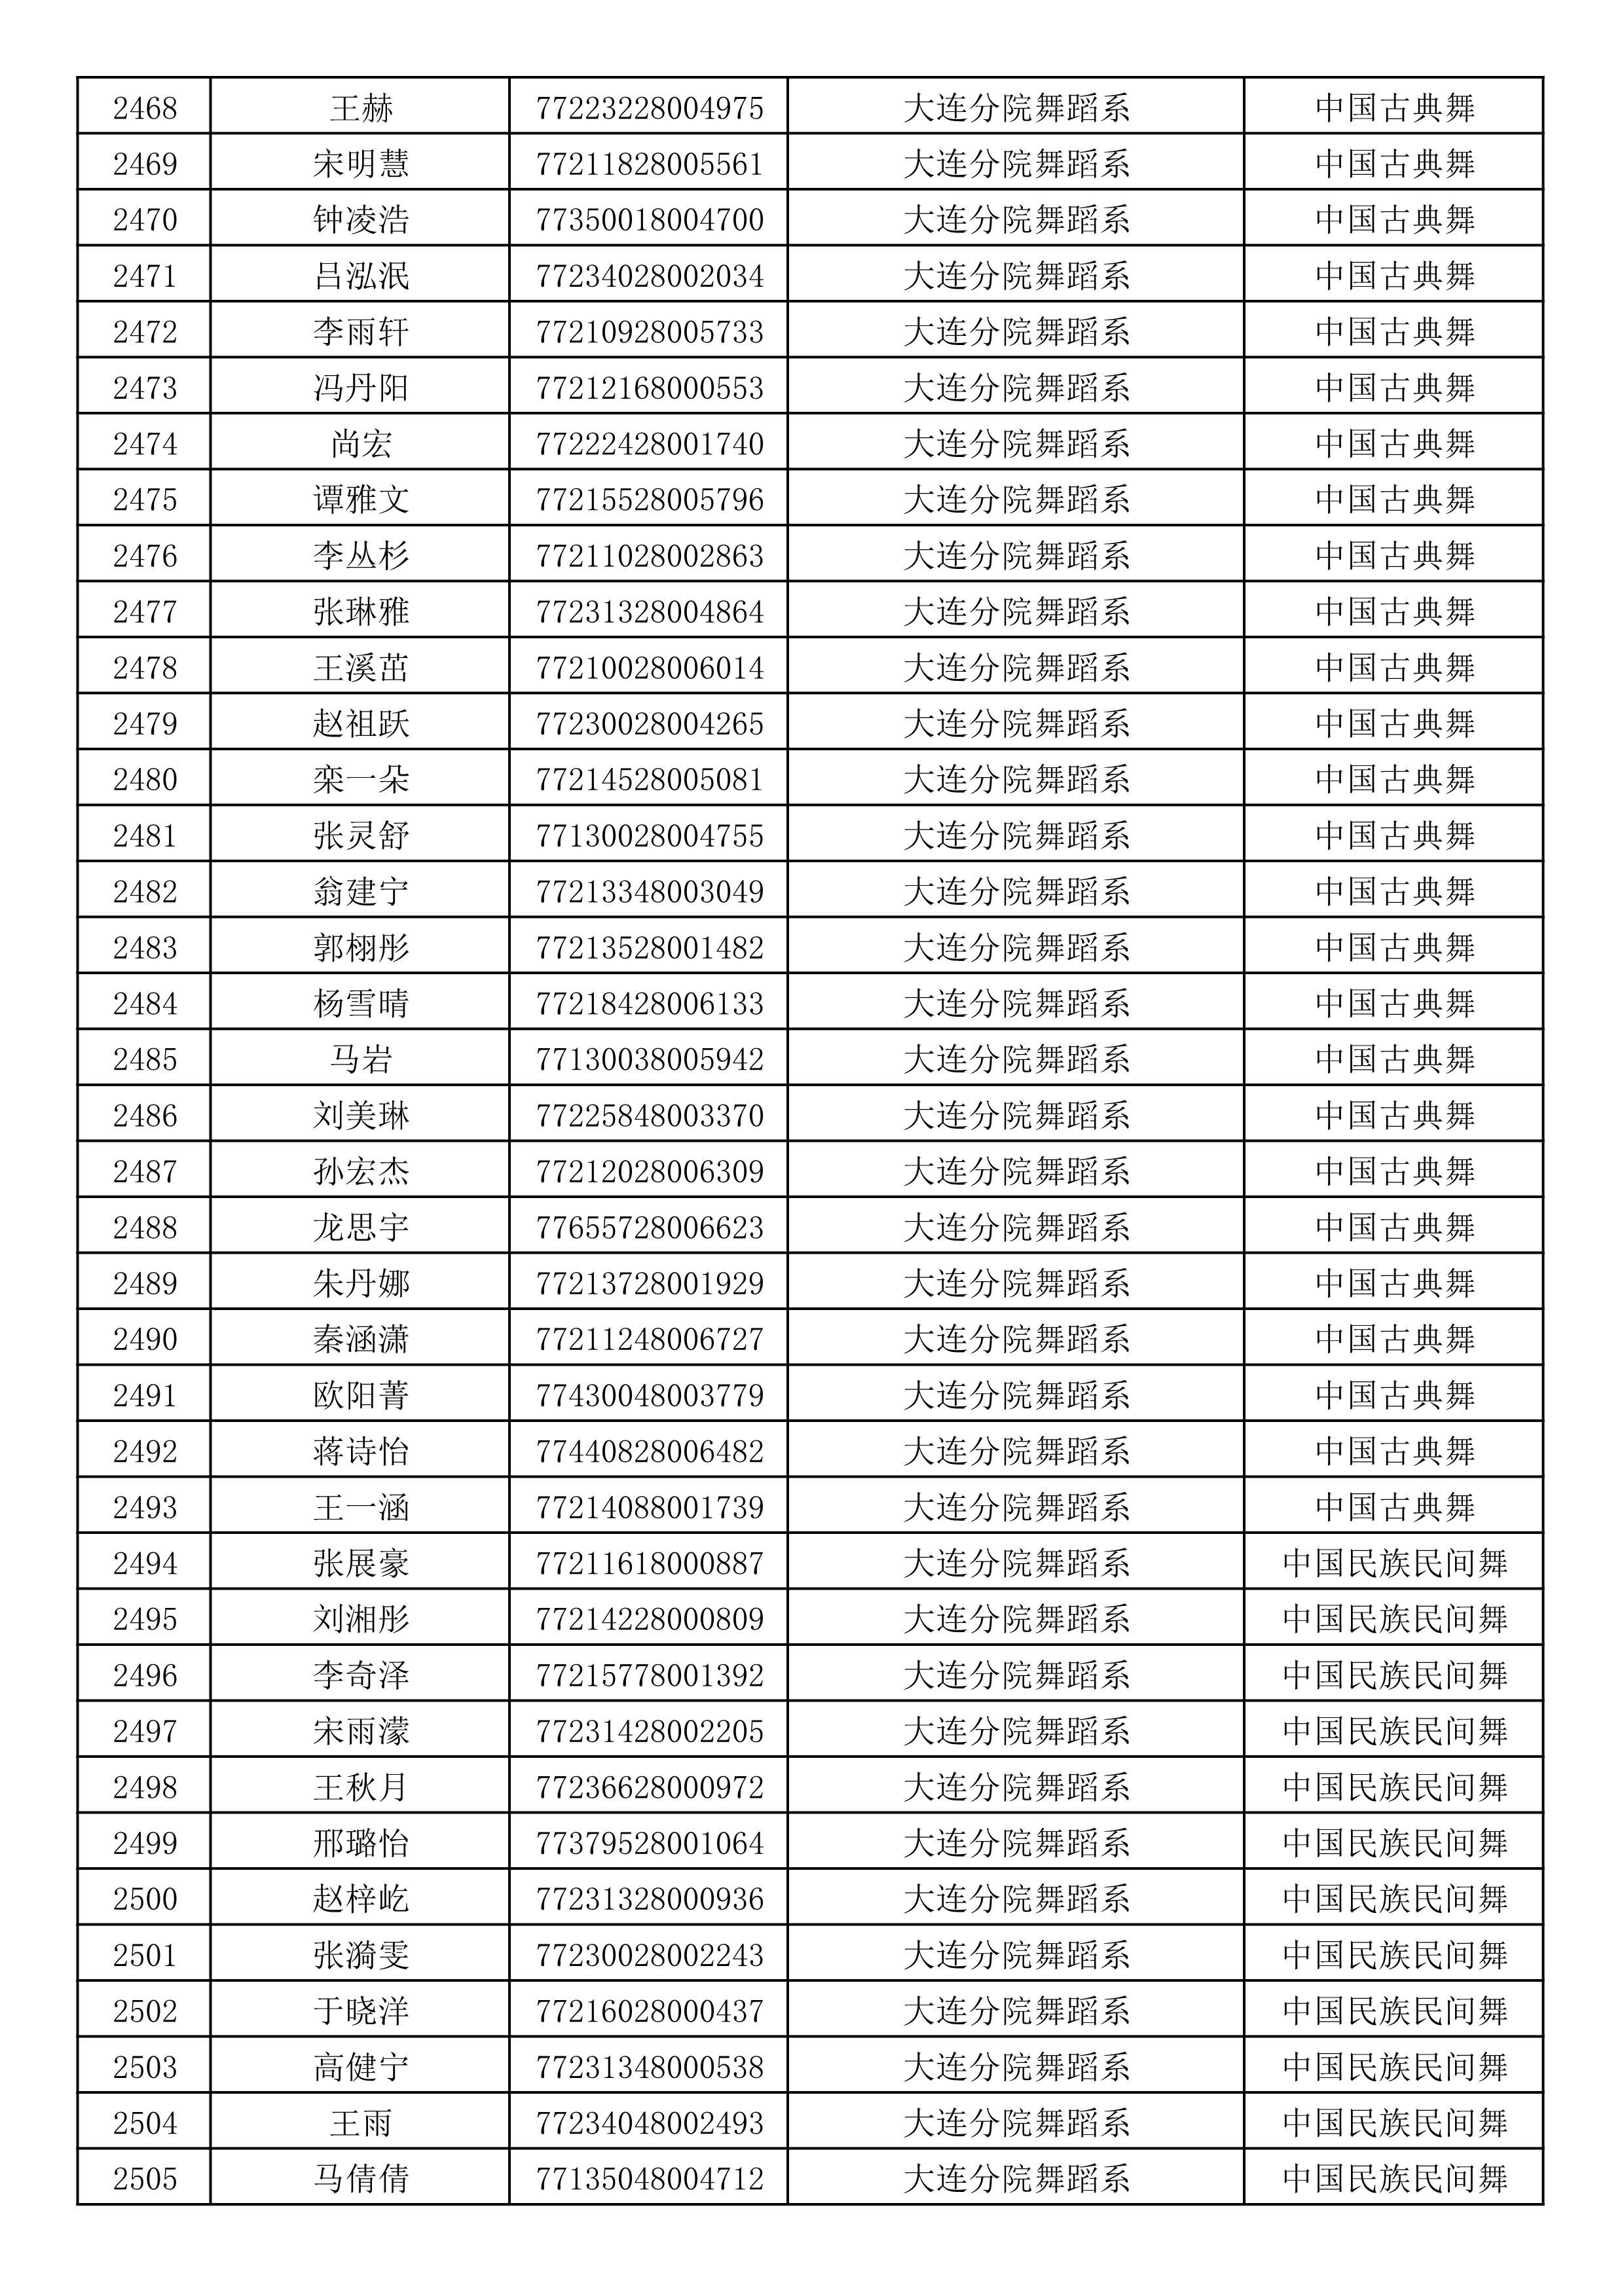 沈阳音乐学院2019年本科招生考试初试合格名单_66.jpg